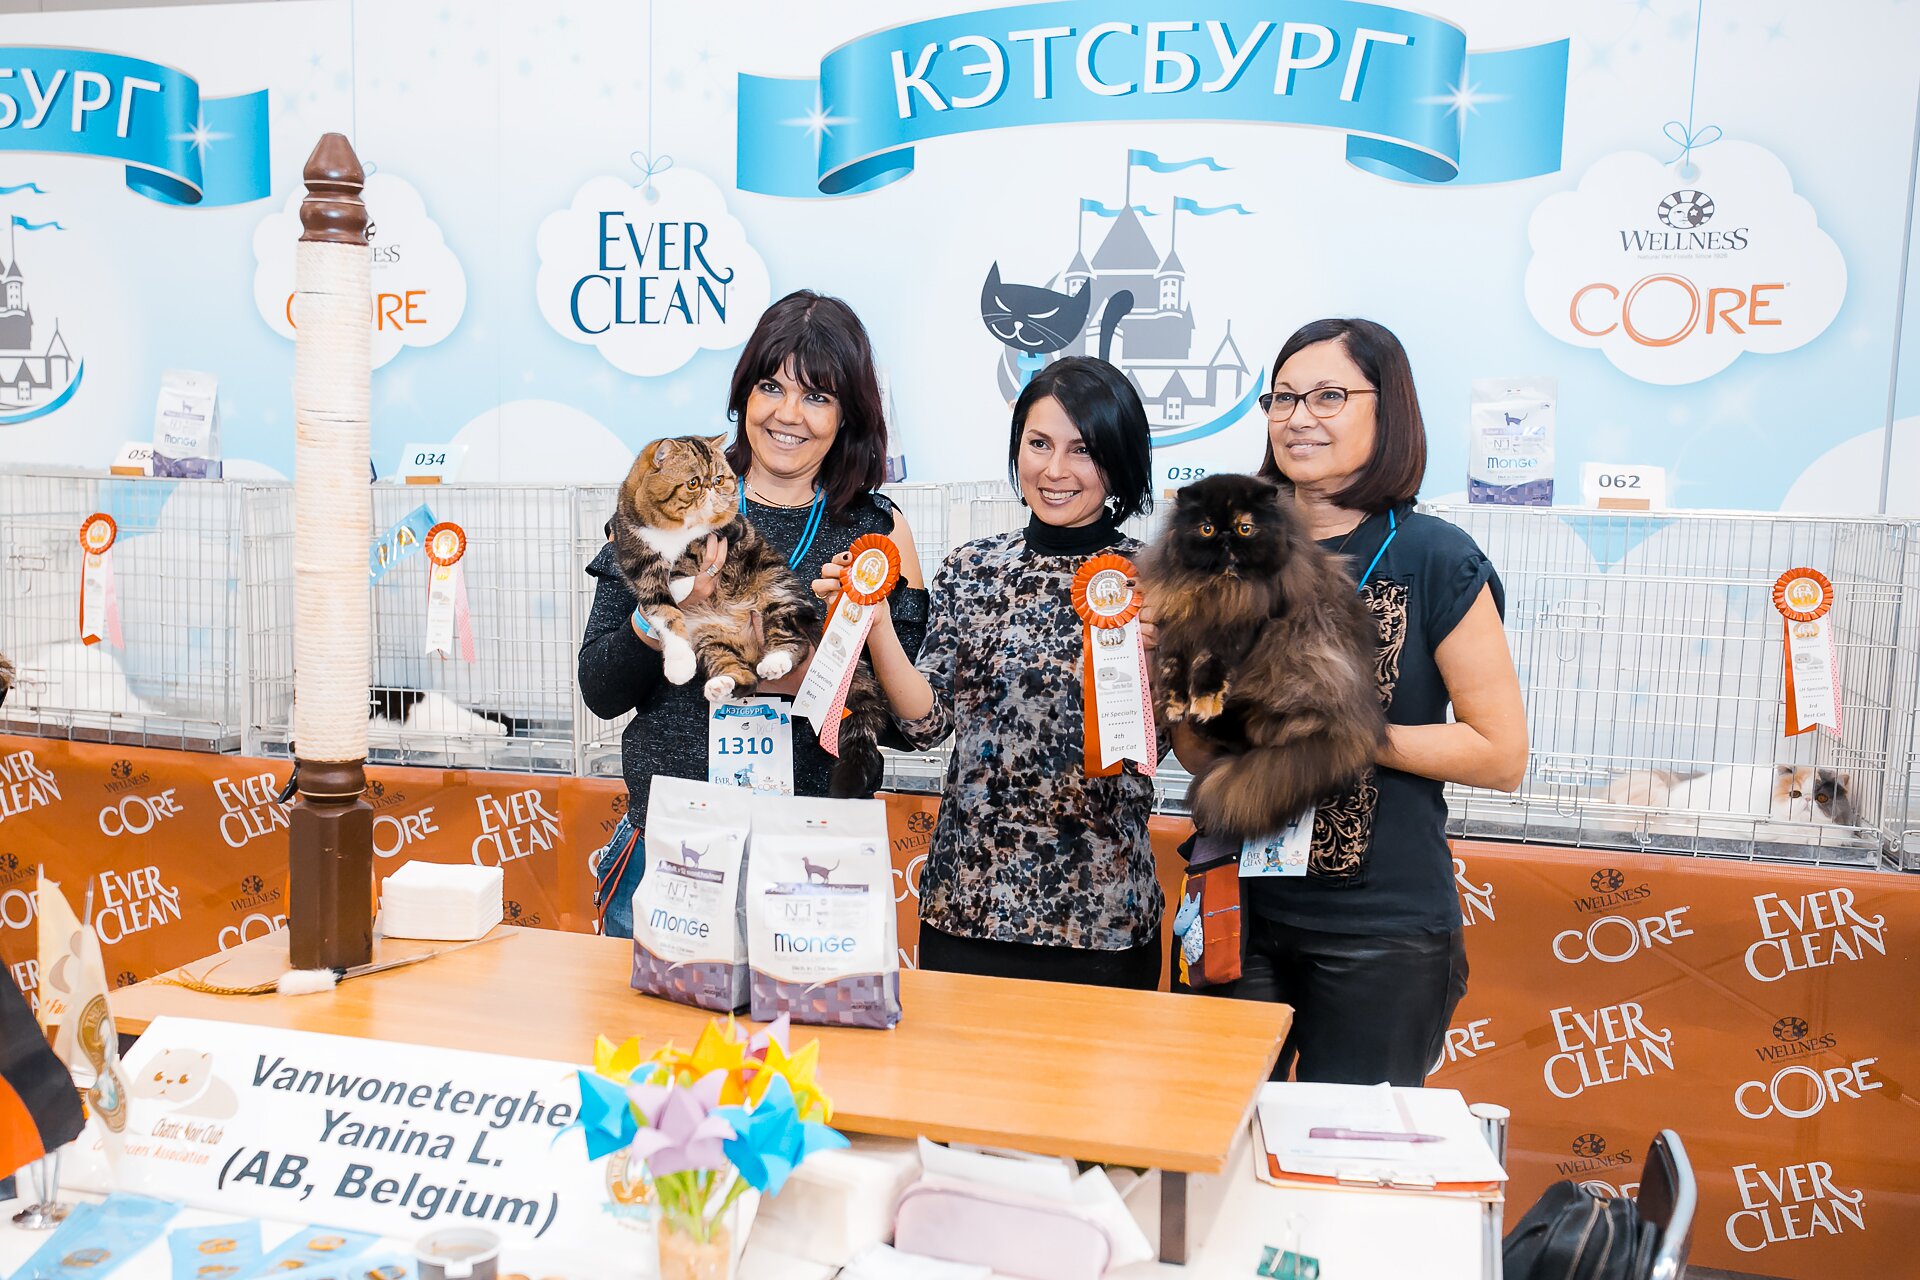 КЭТСБУРГ – город-выставка кошек и лучшее место для проведения активных и незабываемых выходных